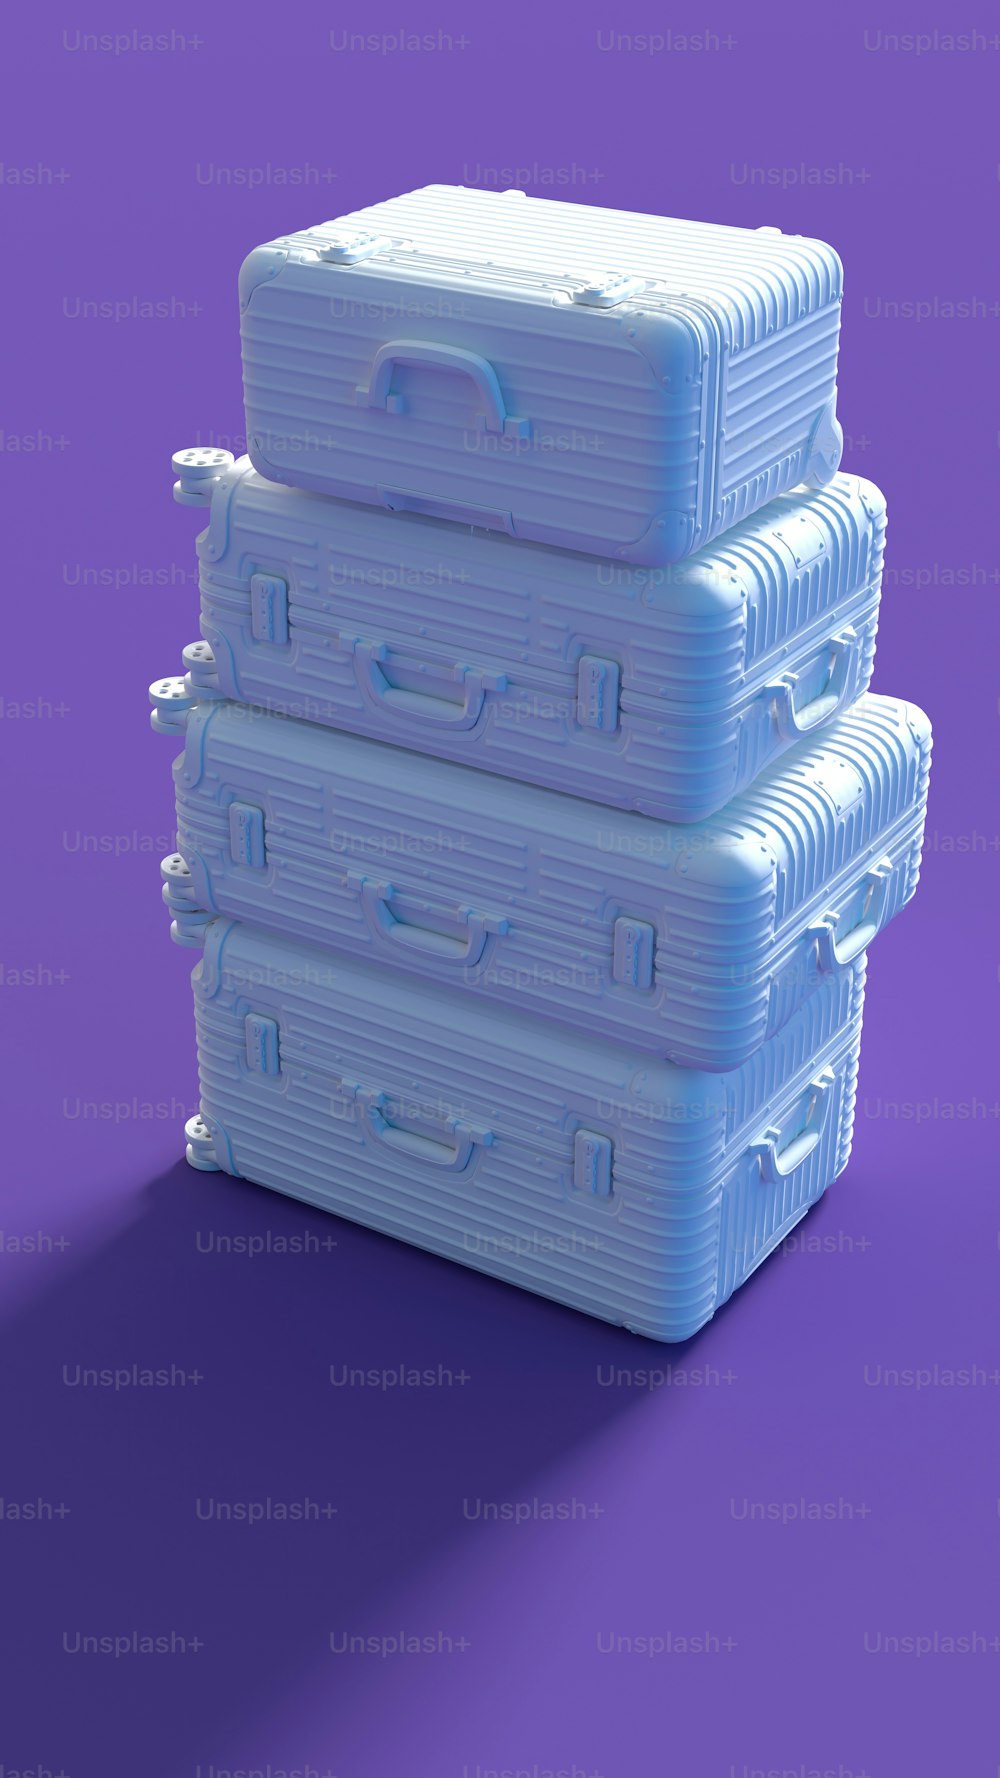 Una pila de tres cajas de plástico sobre una superficie púrpura